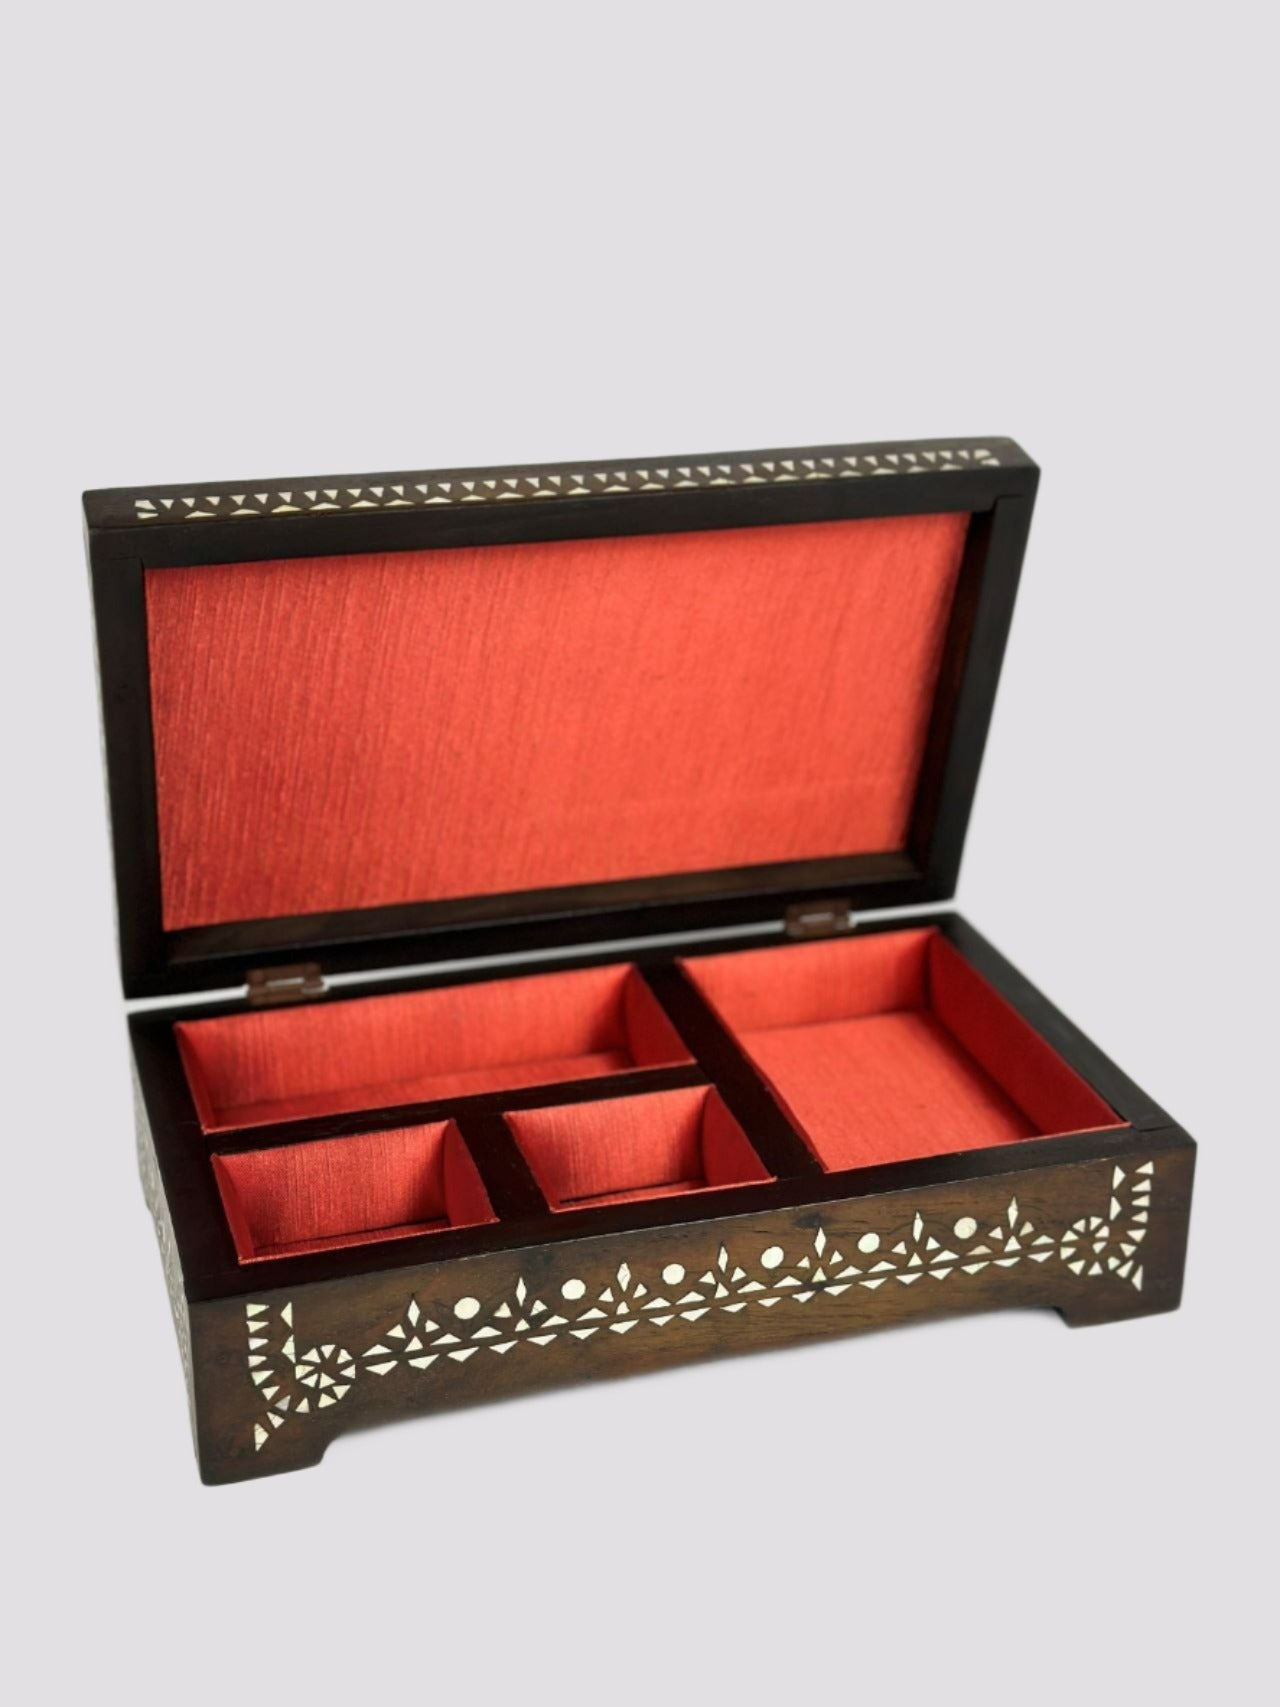 Maranao Baor Jewelry Box